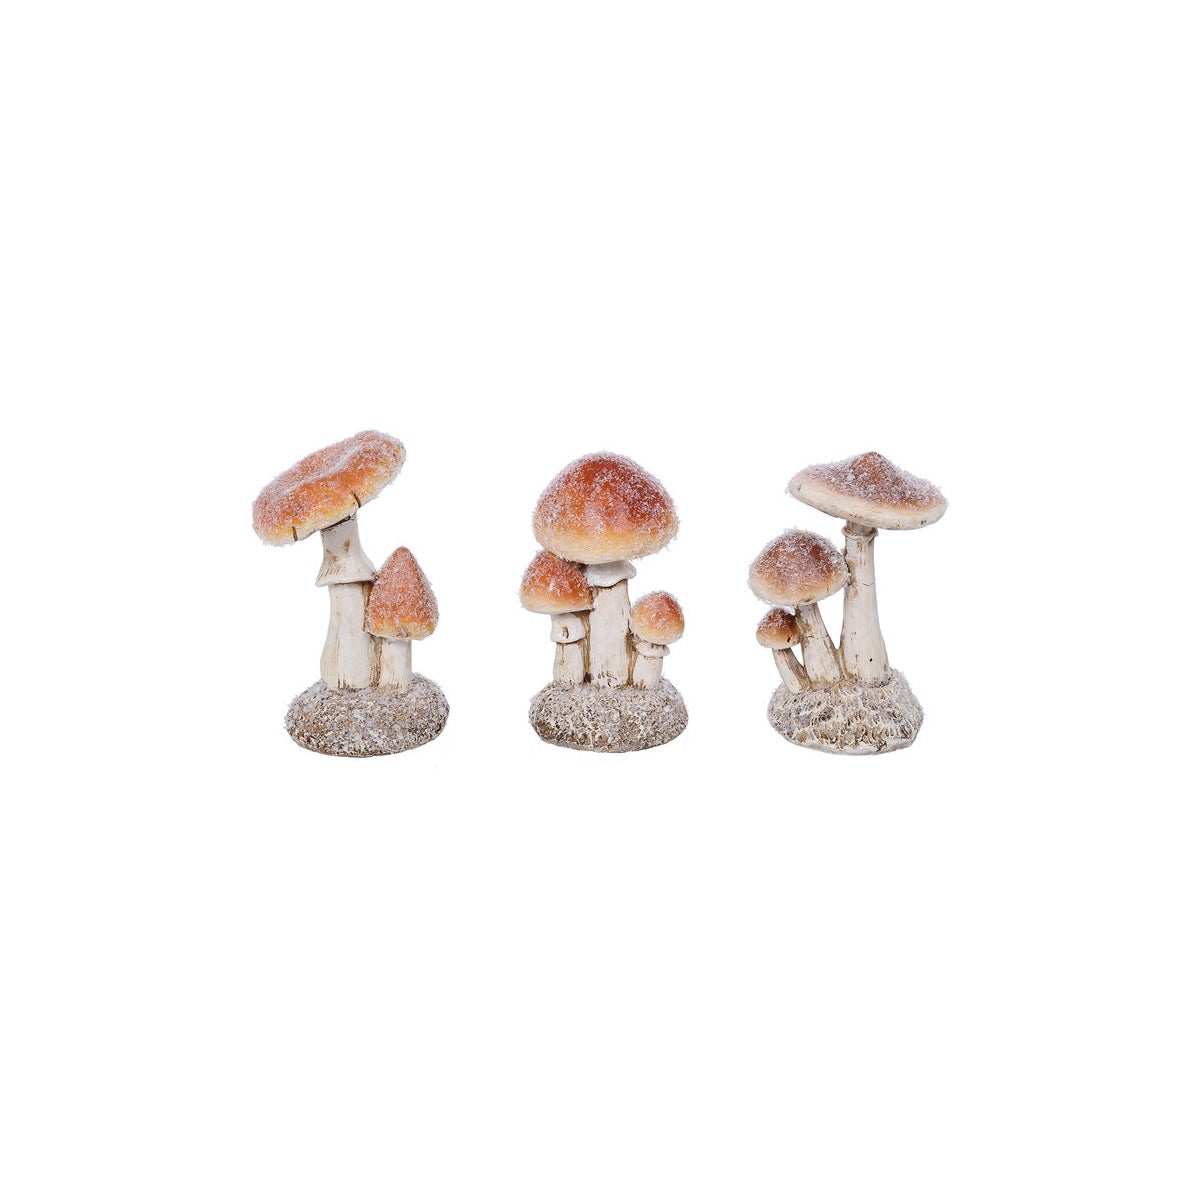 Rsn Mushrooms Stand 3 Asst